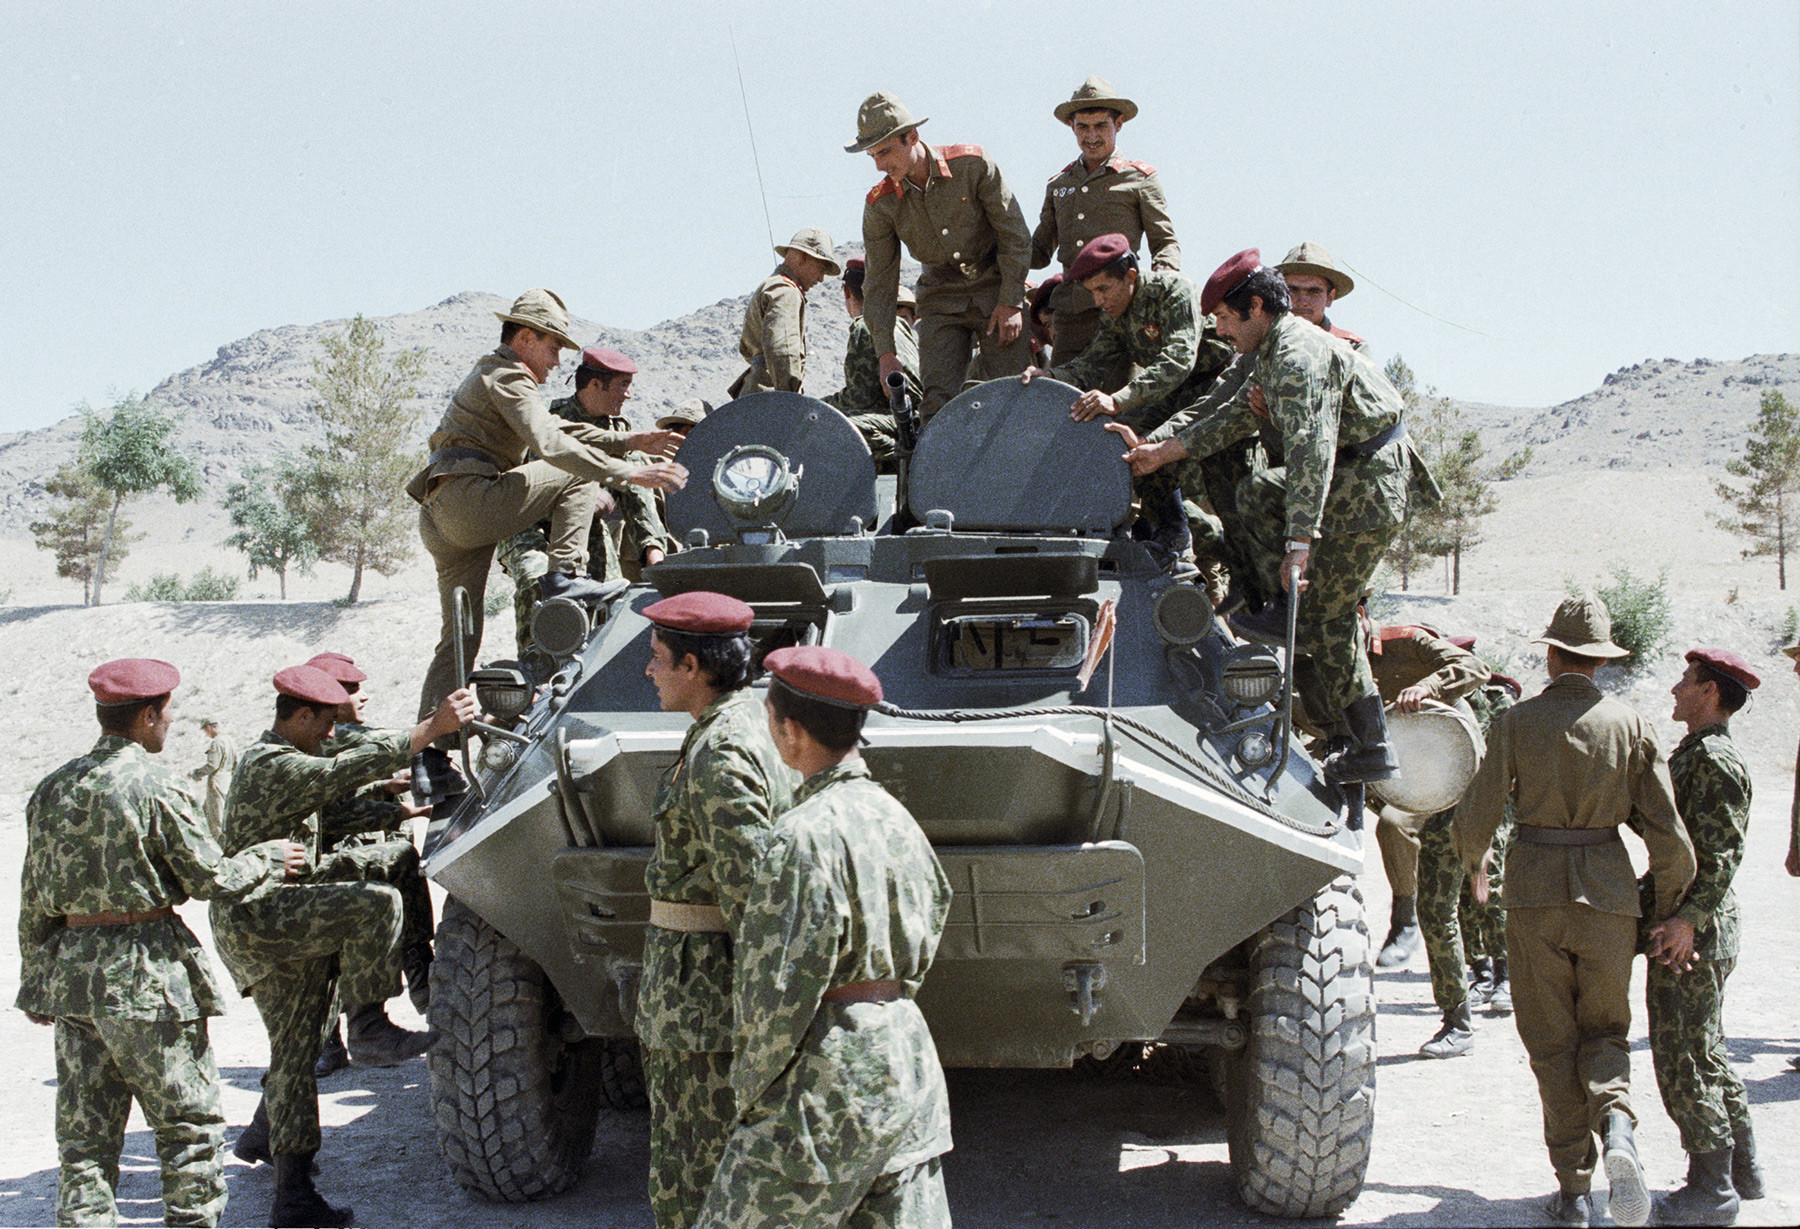 Des soldats soviétiques montrent leur équipement militaire aux soldats des troupes aéroportées afghans.